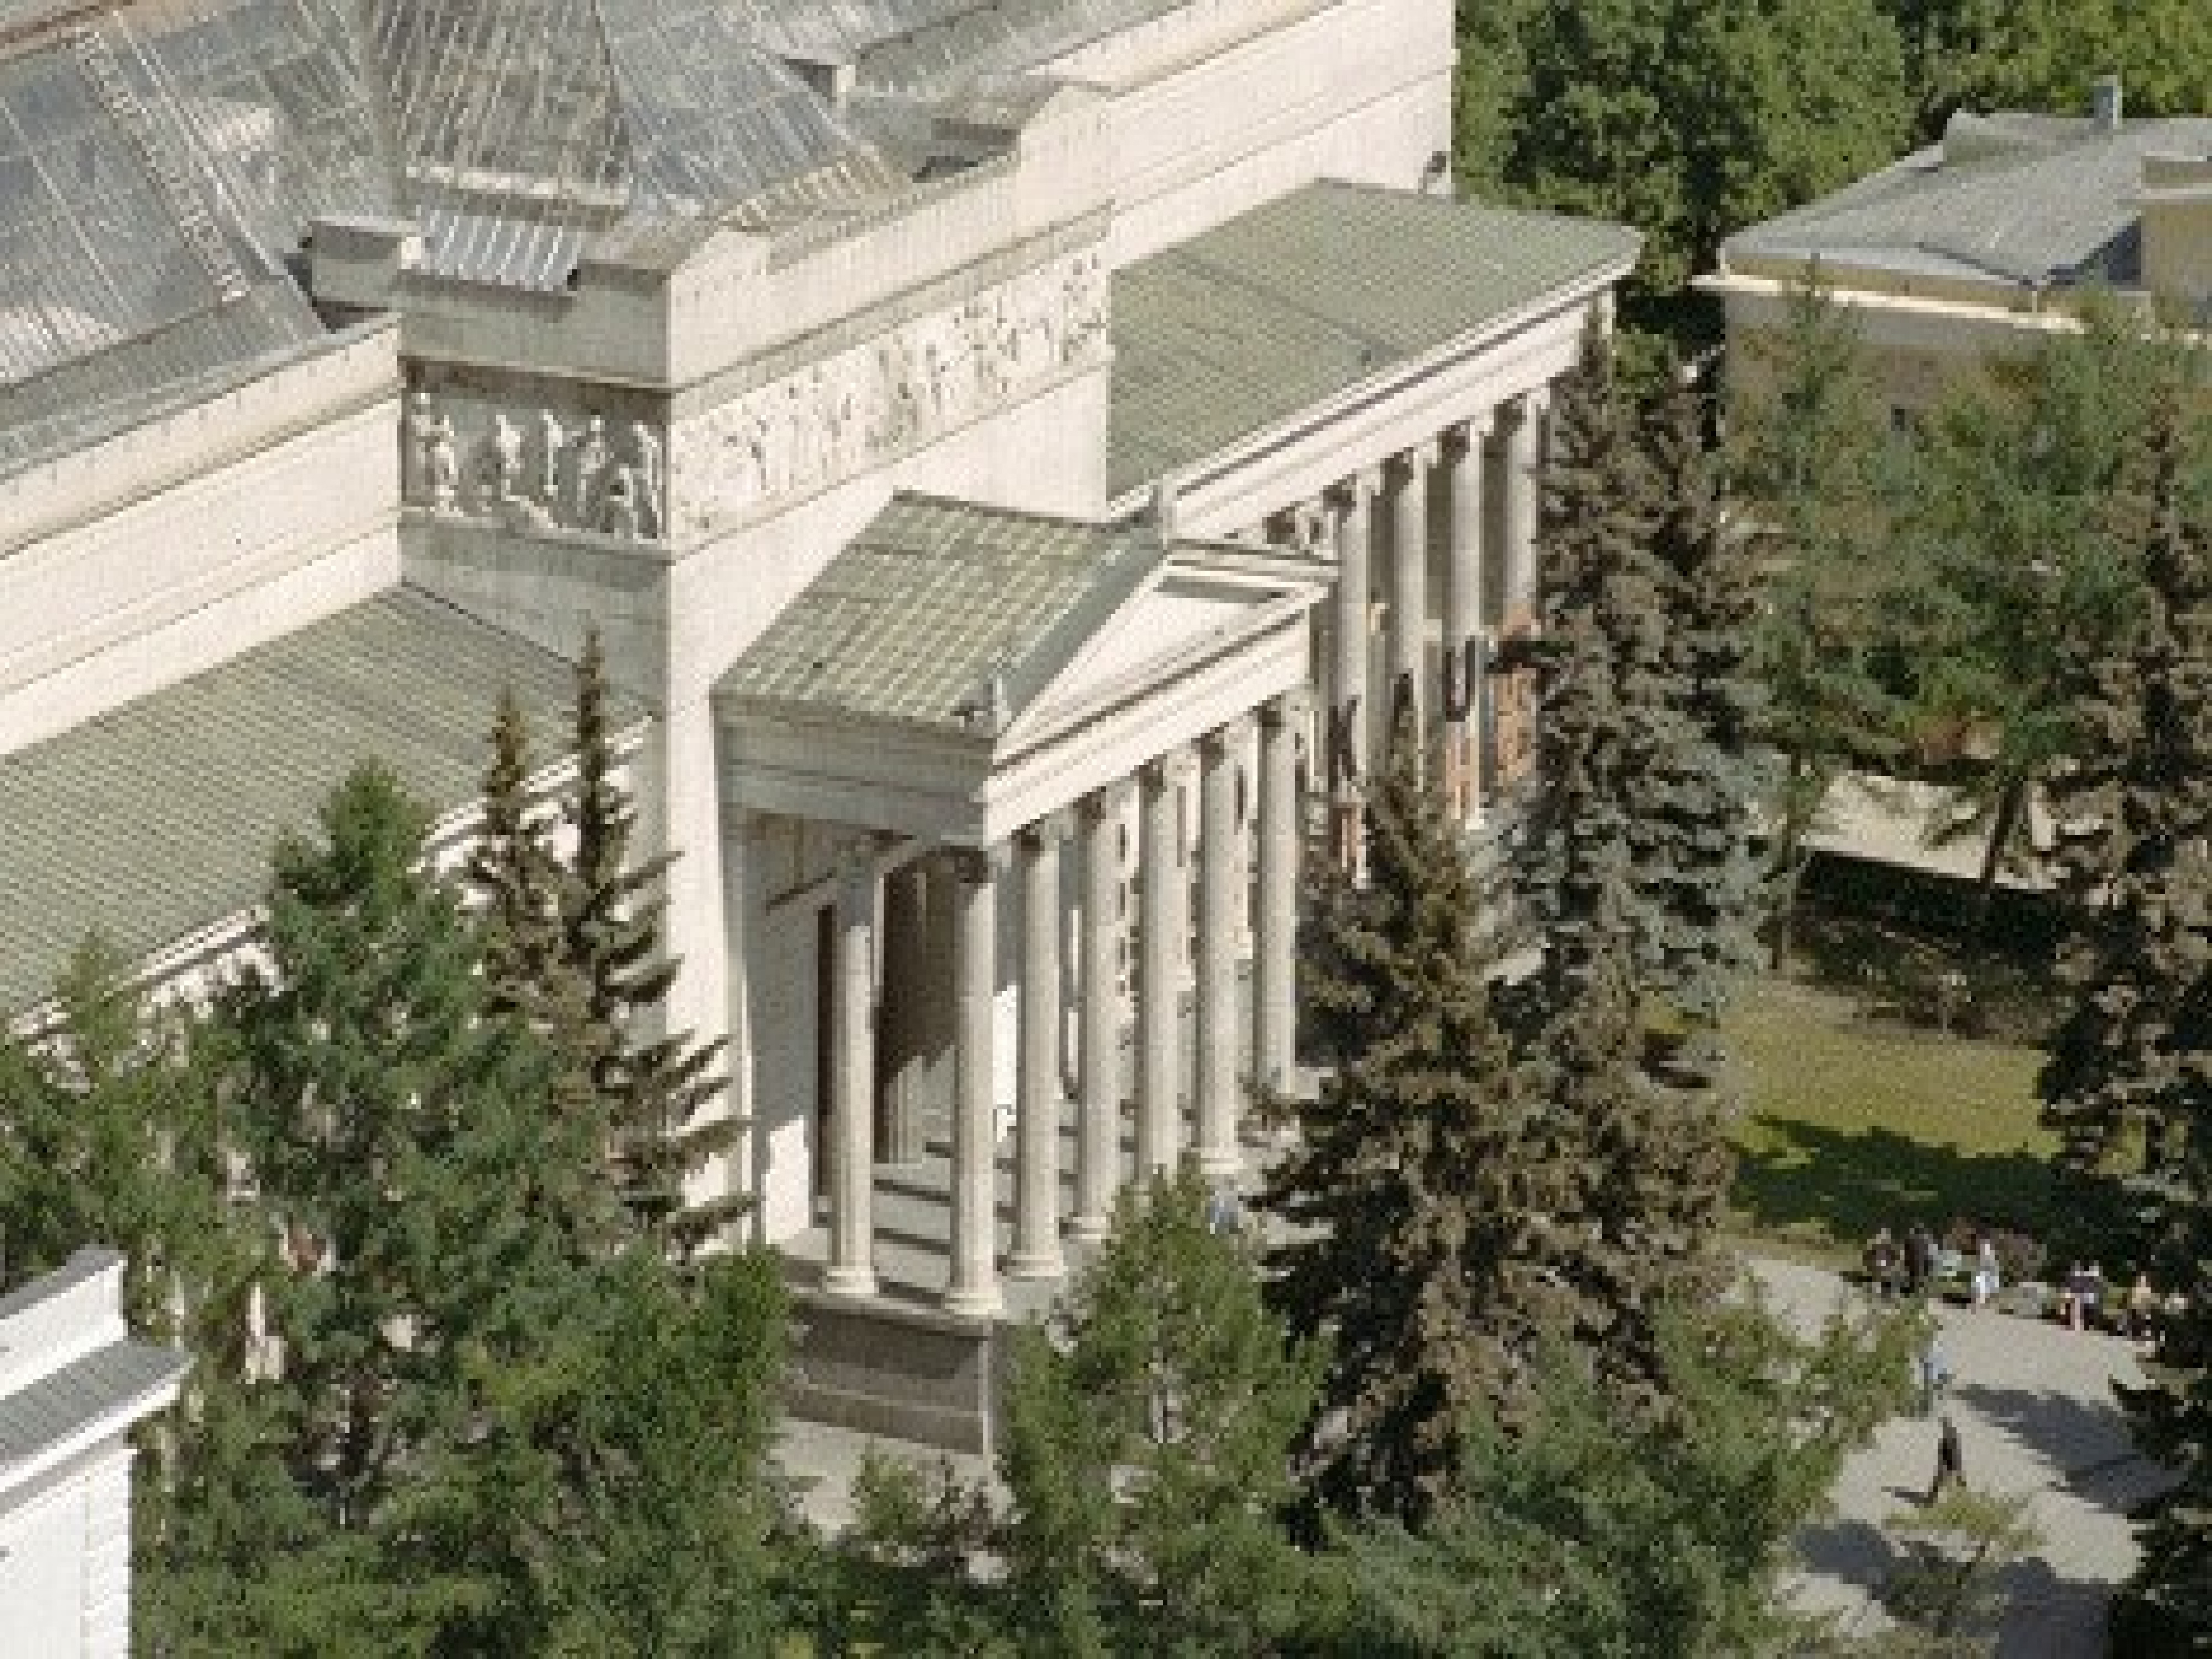 здание музея изобразительных искусств имени пушкина